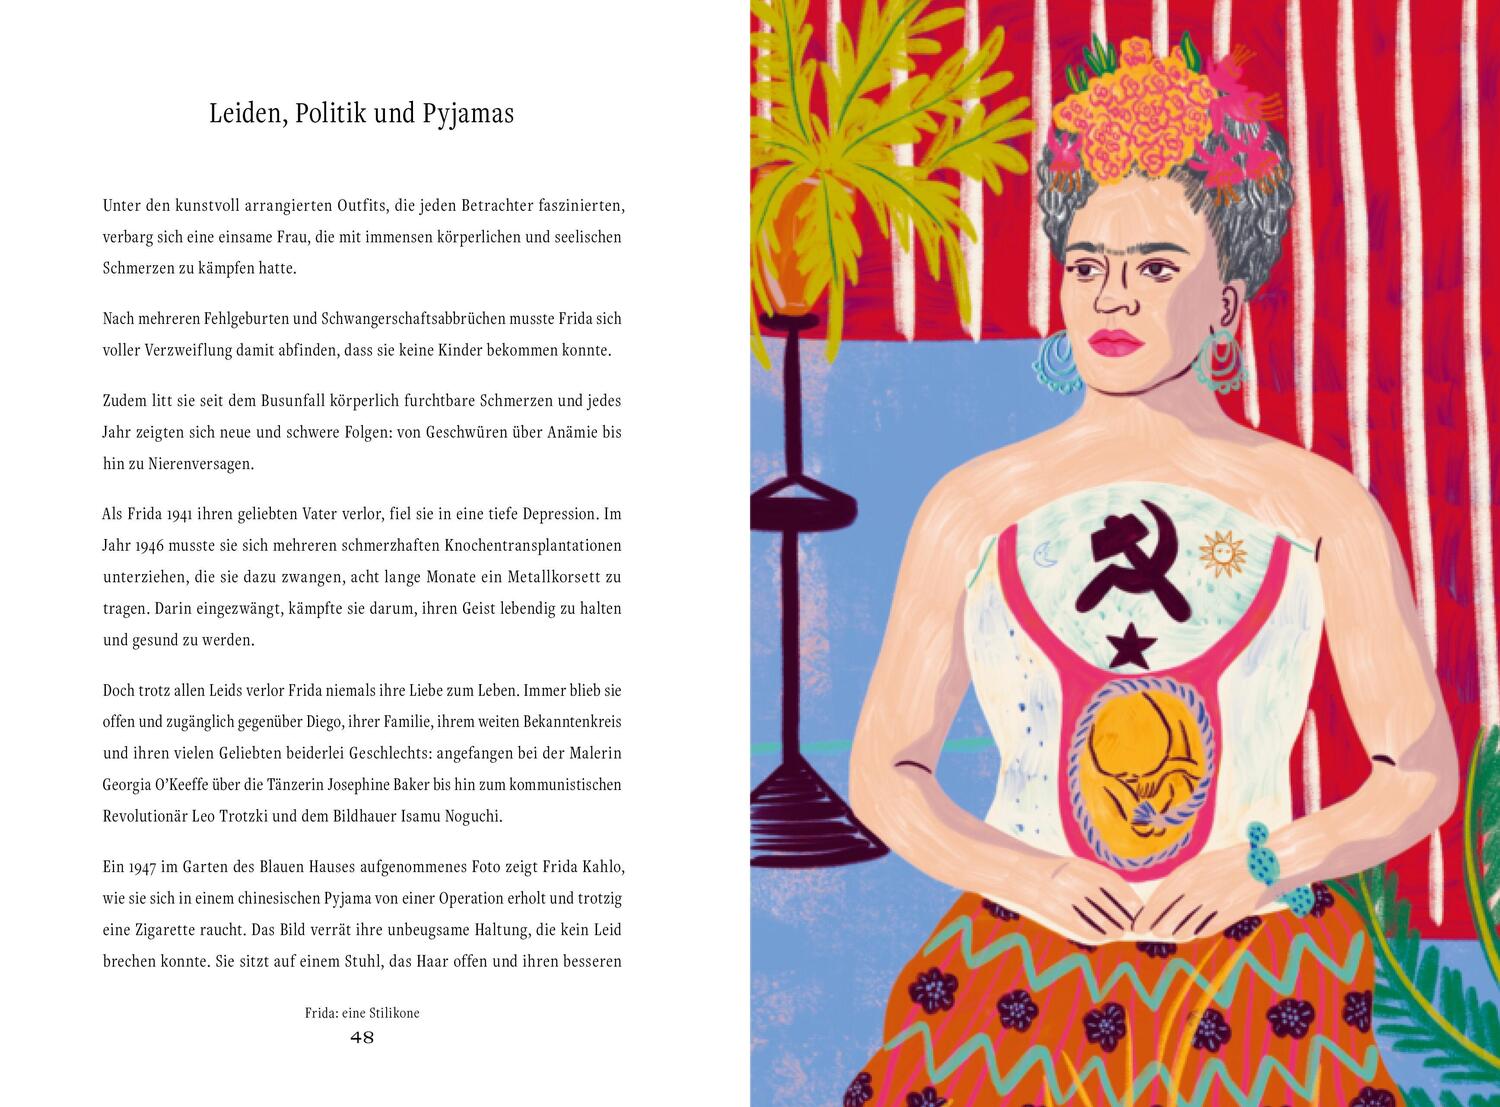 Bild: 9783791389875 | Frida: eine Stilikone | Der unvergleichliche Stil von Frida Kahlo